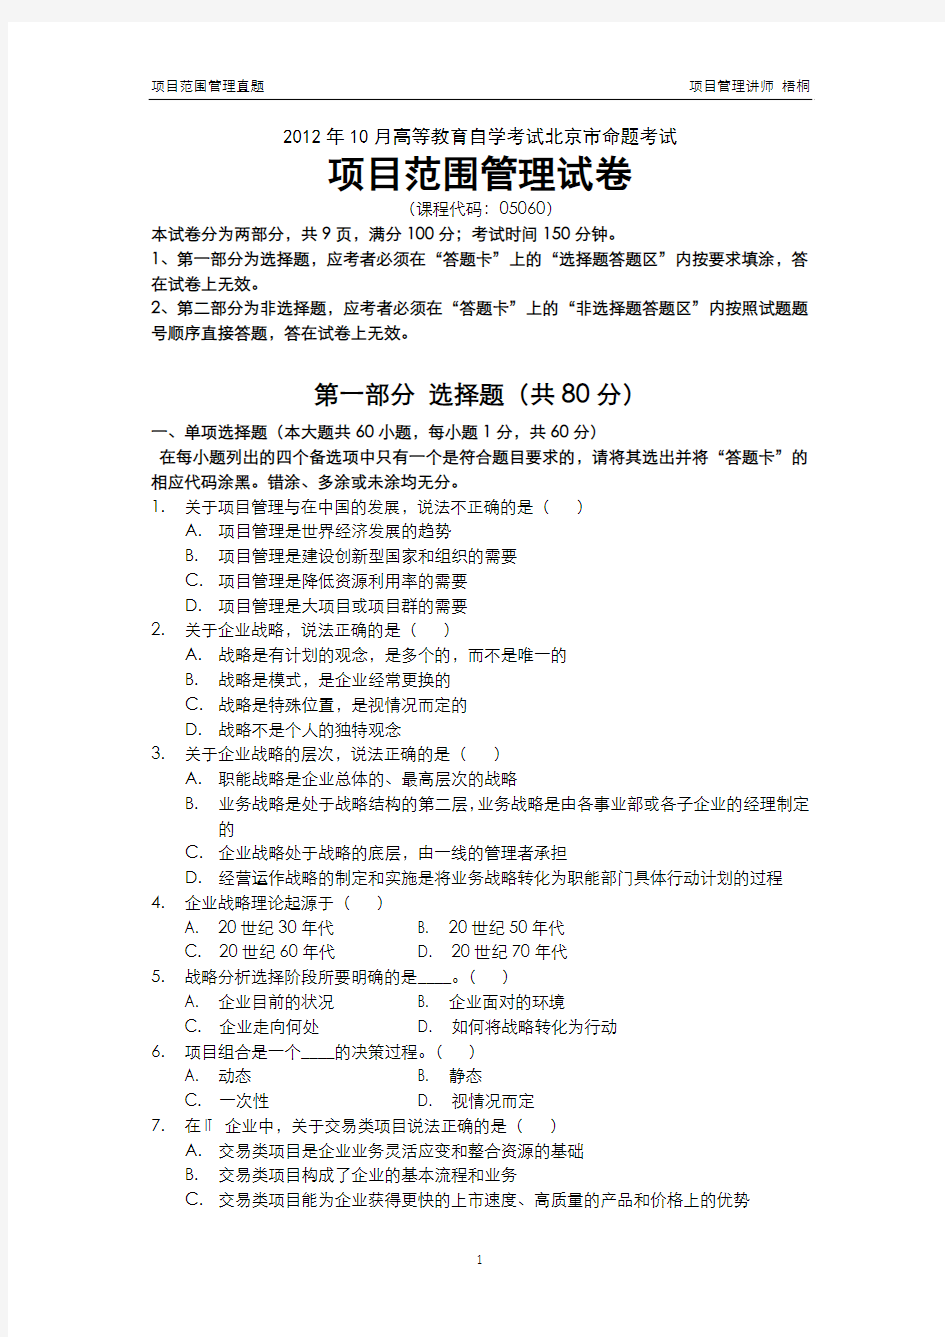 2012年10月高等教育自学考试北京市命题考试项目设计与范围管理真题